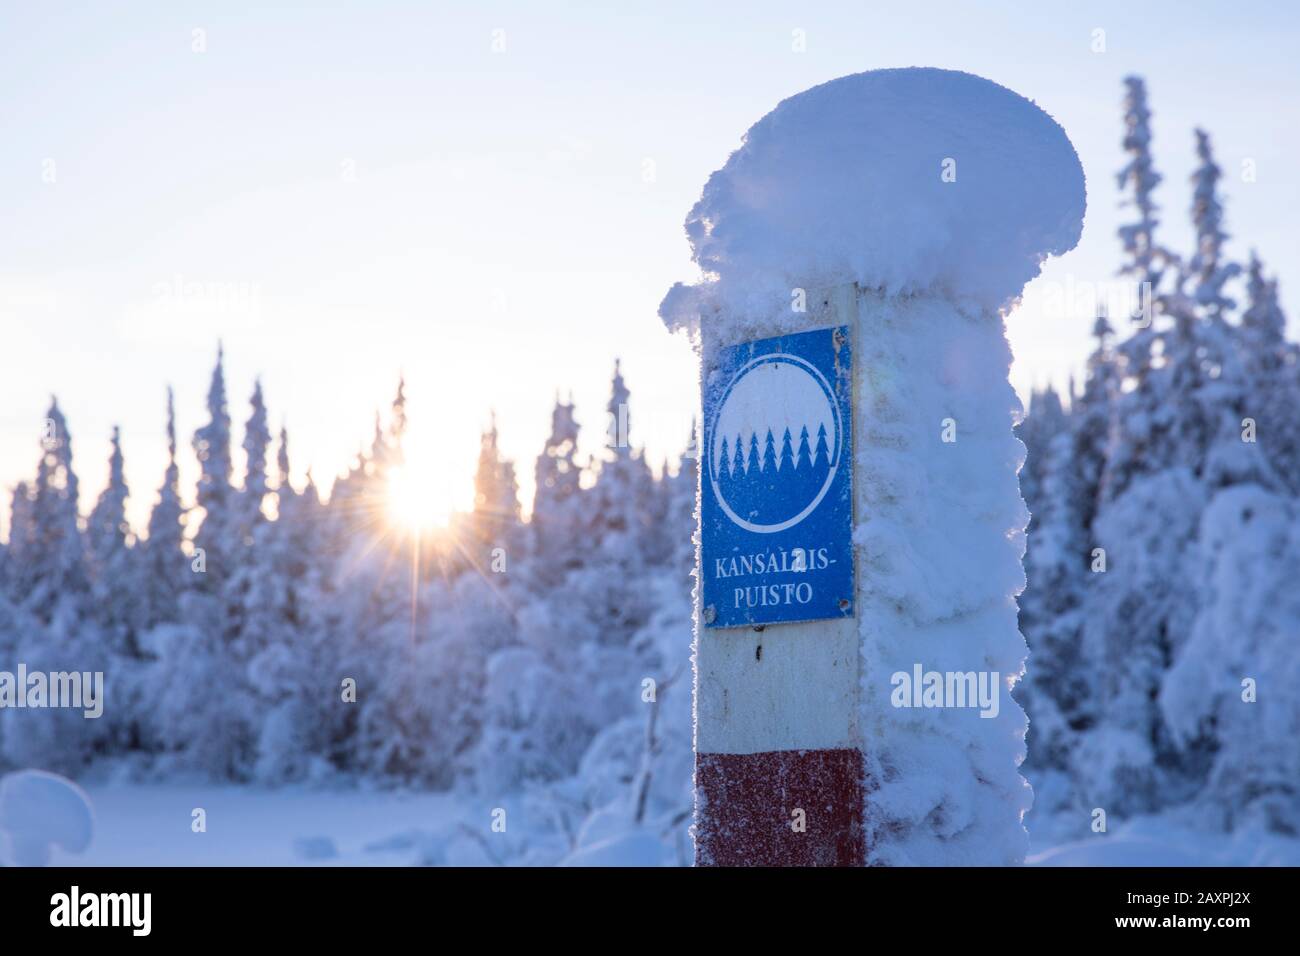 Finland, Lapland, Kittilä, Pallastunturi, sign national park Stock Photo